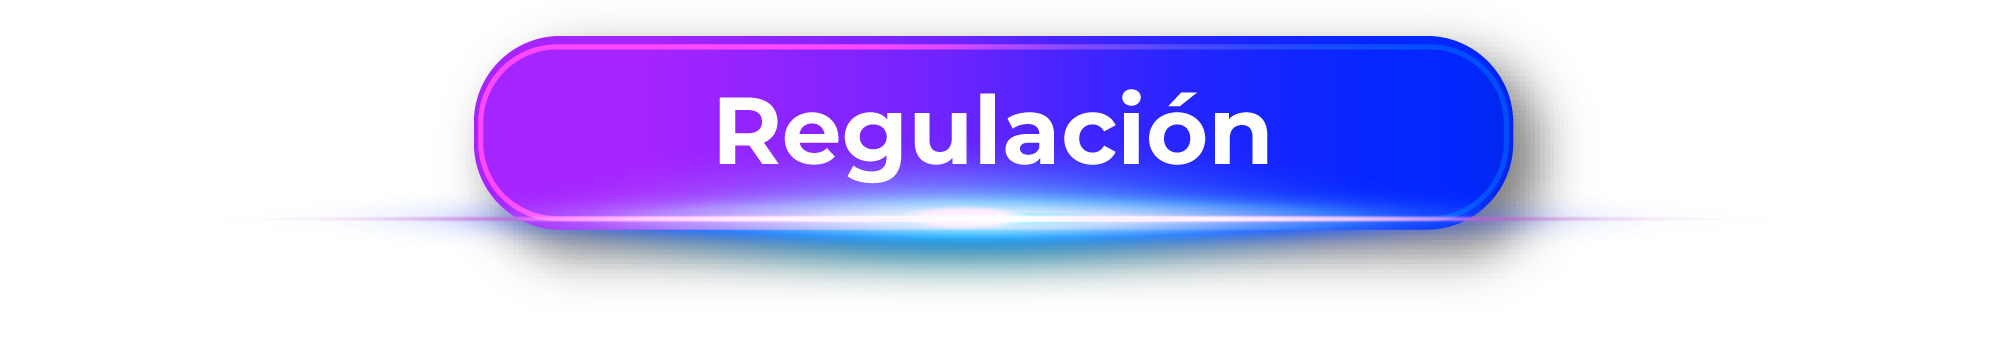 regulacion